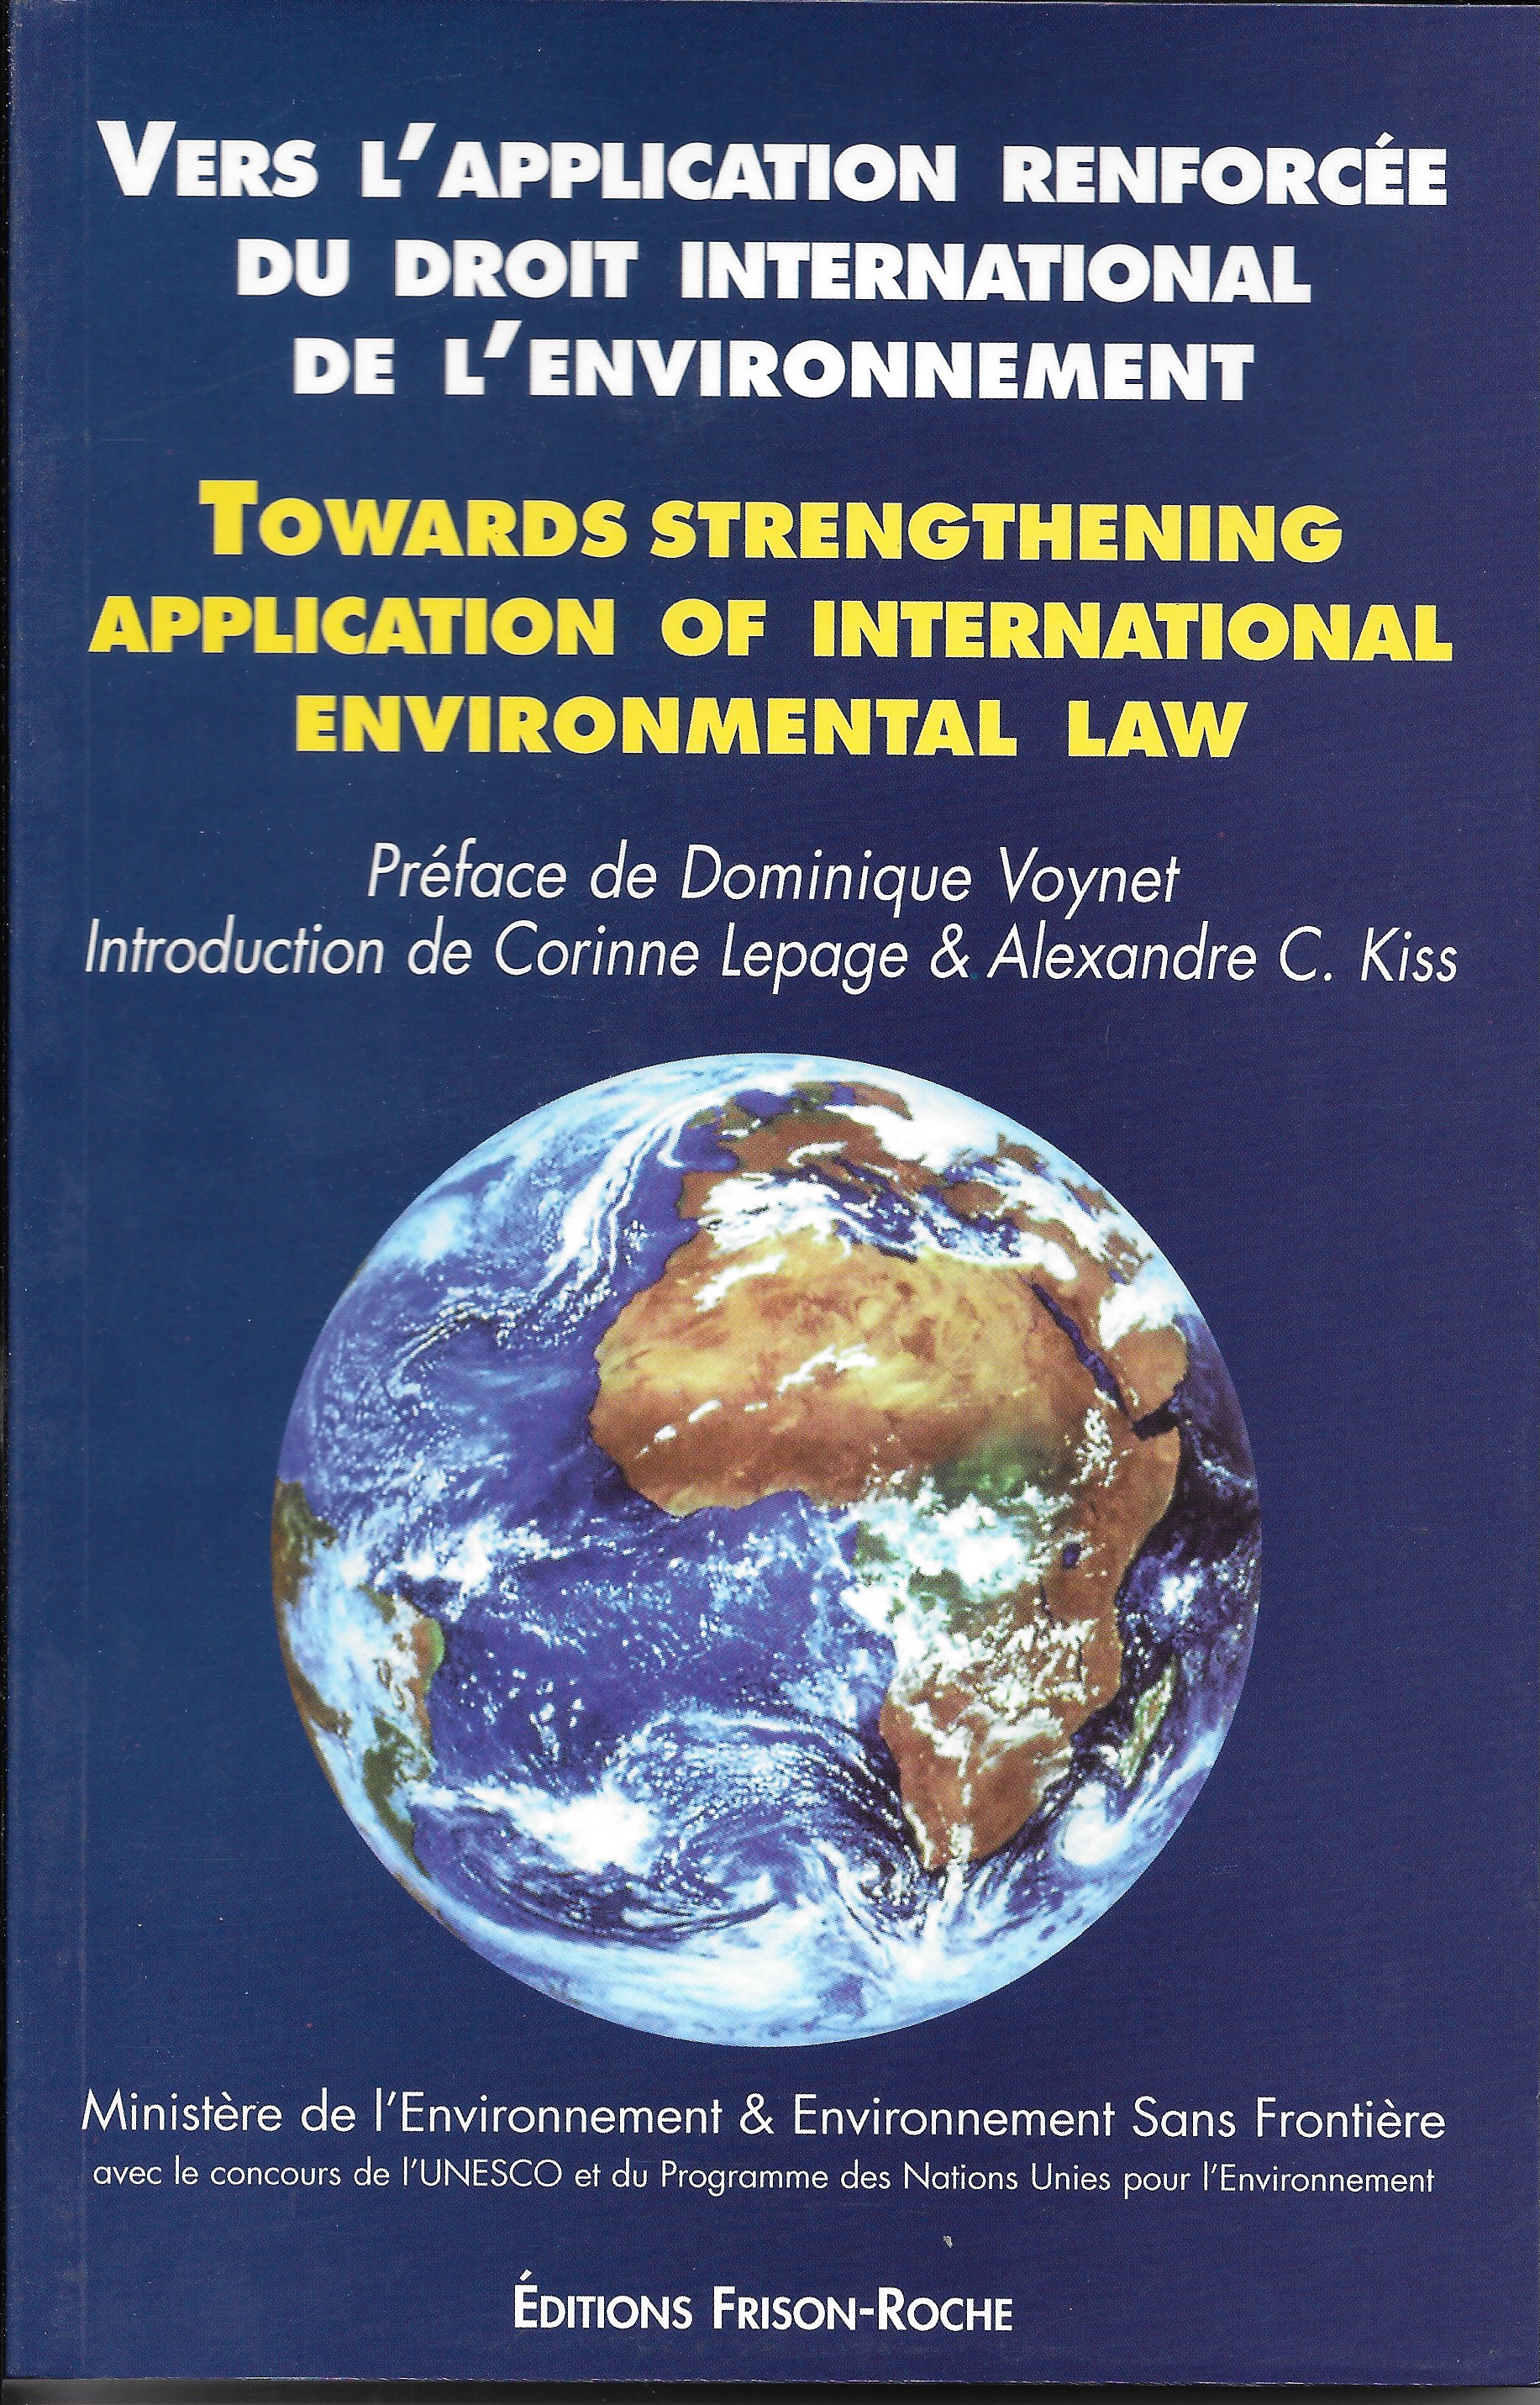 dissertation sur le droit international de l'environnement